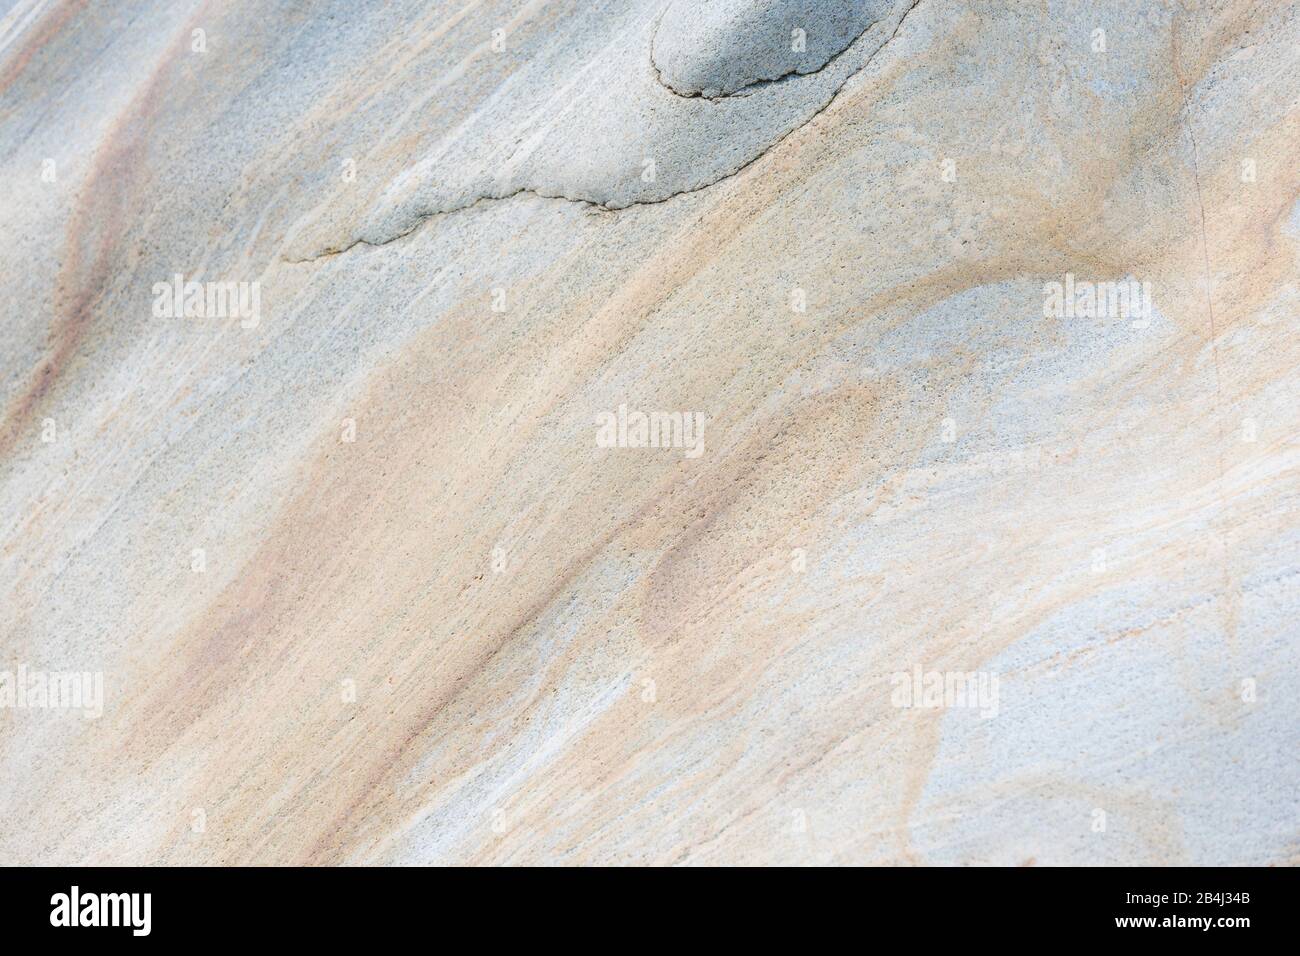 Europe, Suisse, Tessin, Vallemaggia. Gros plan d'un morceau légèrement oxydé de granit Maggia (gneiss). Banque D'Images